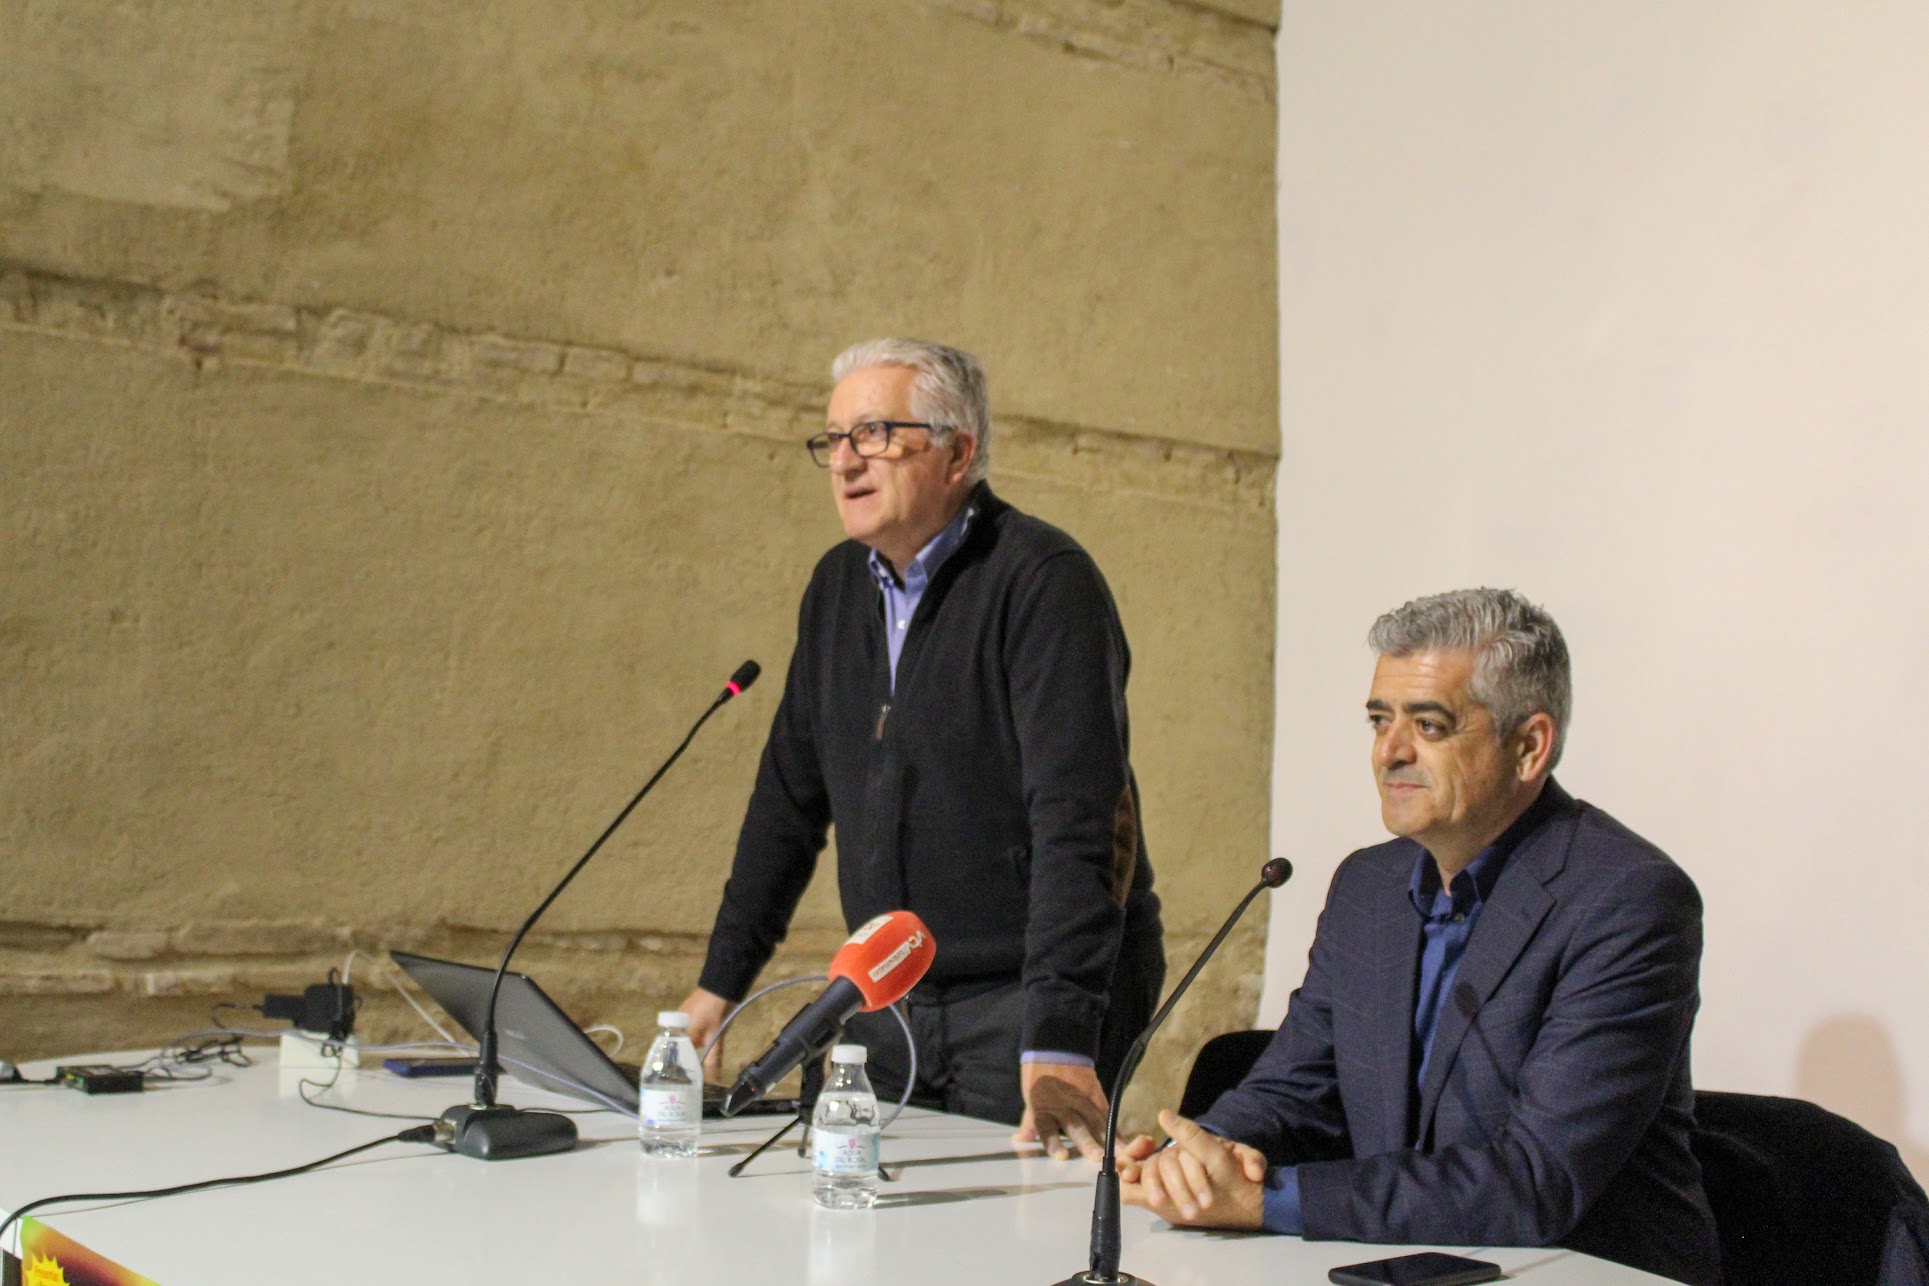 Manolo Casal y Modesto Barragán en la presentación de su libro “Generación tangai”